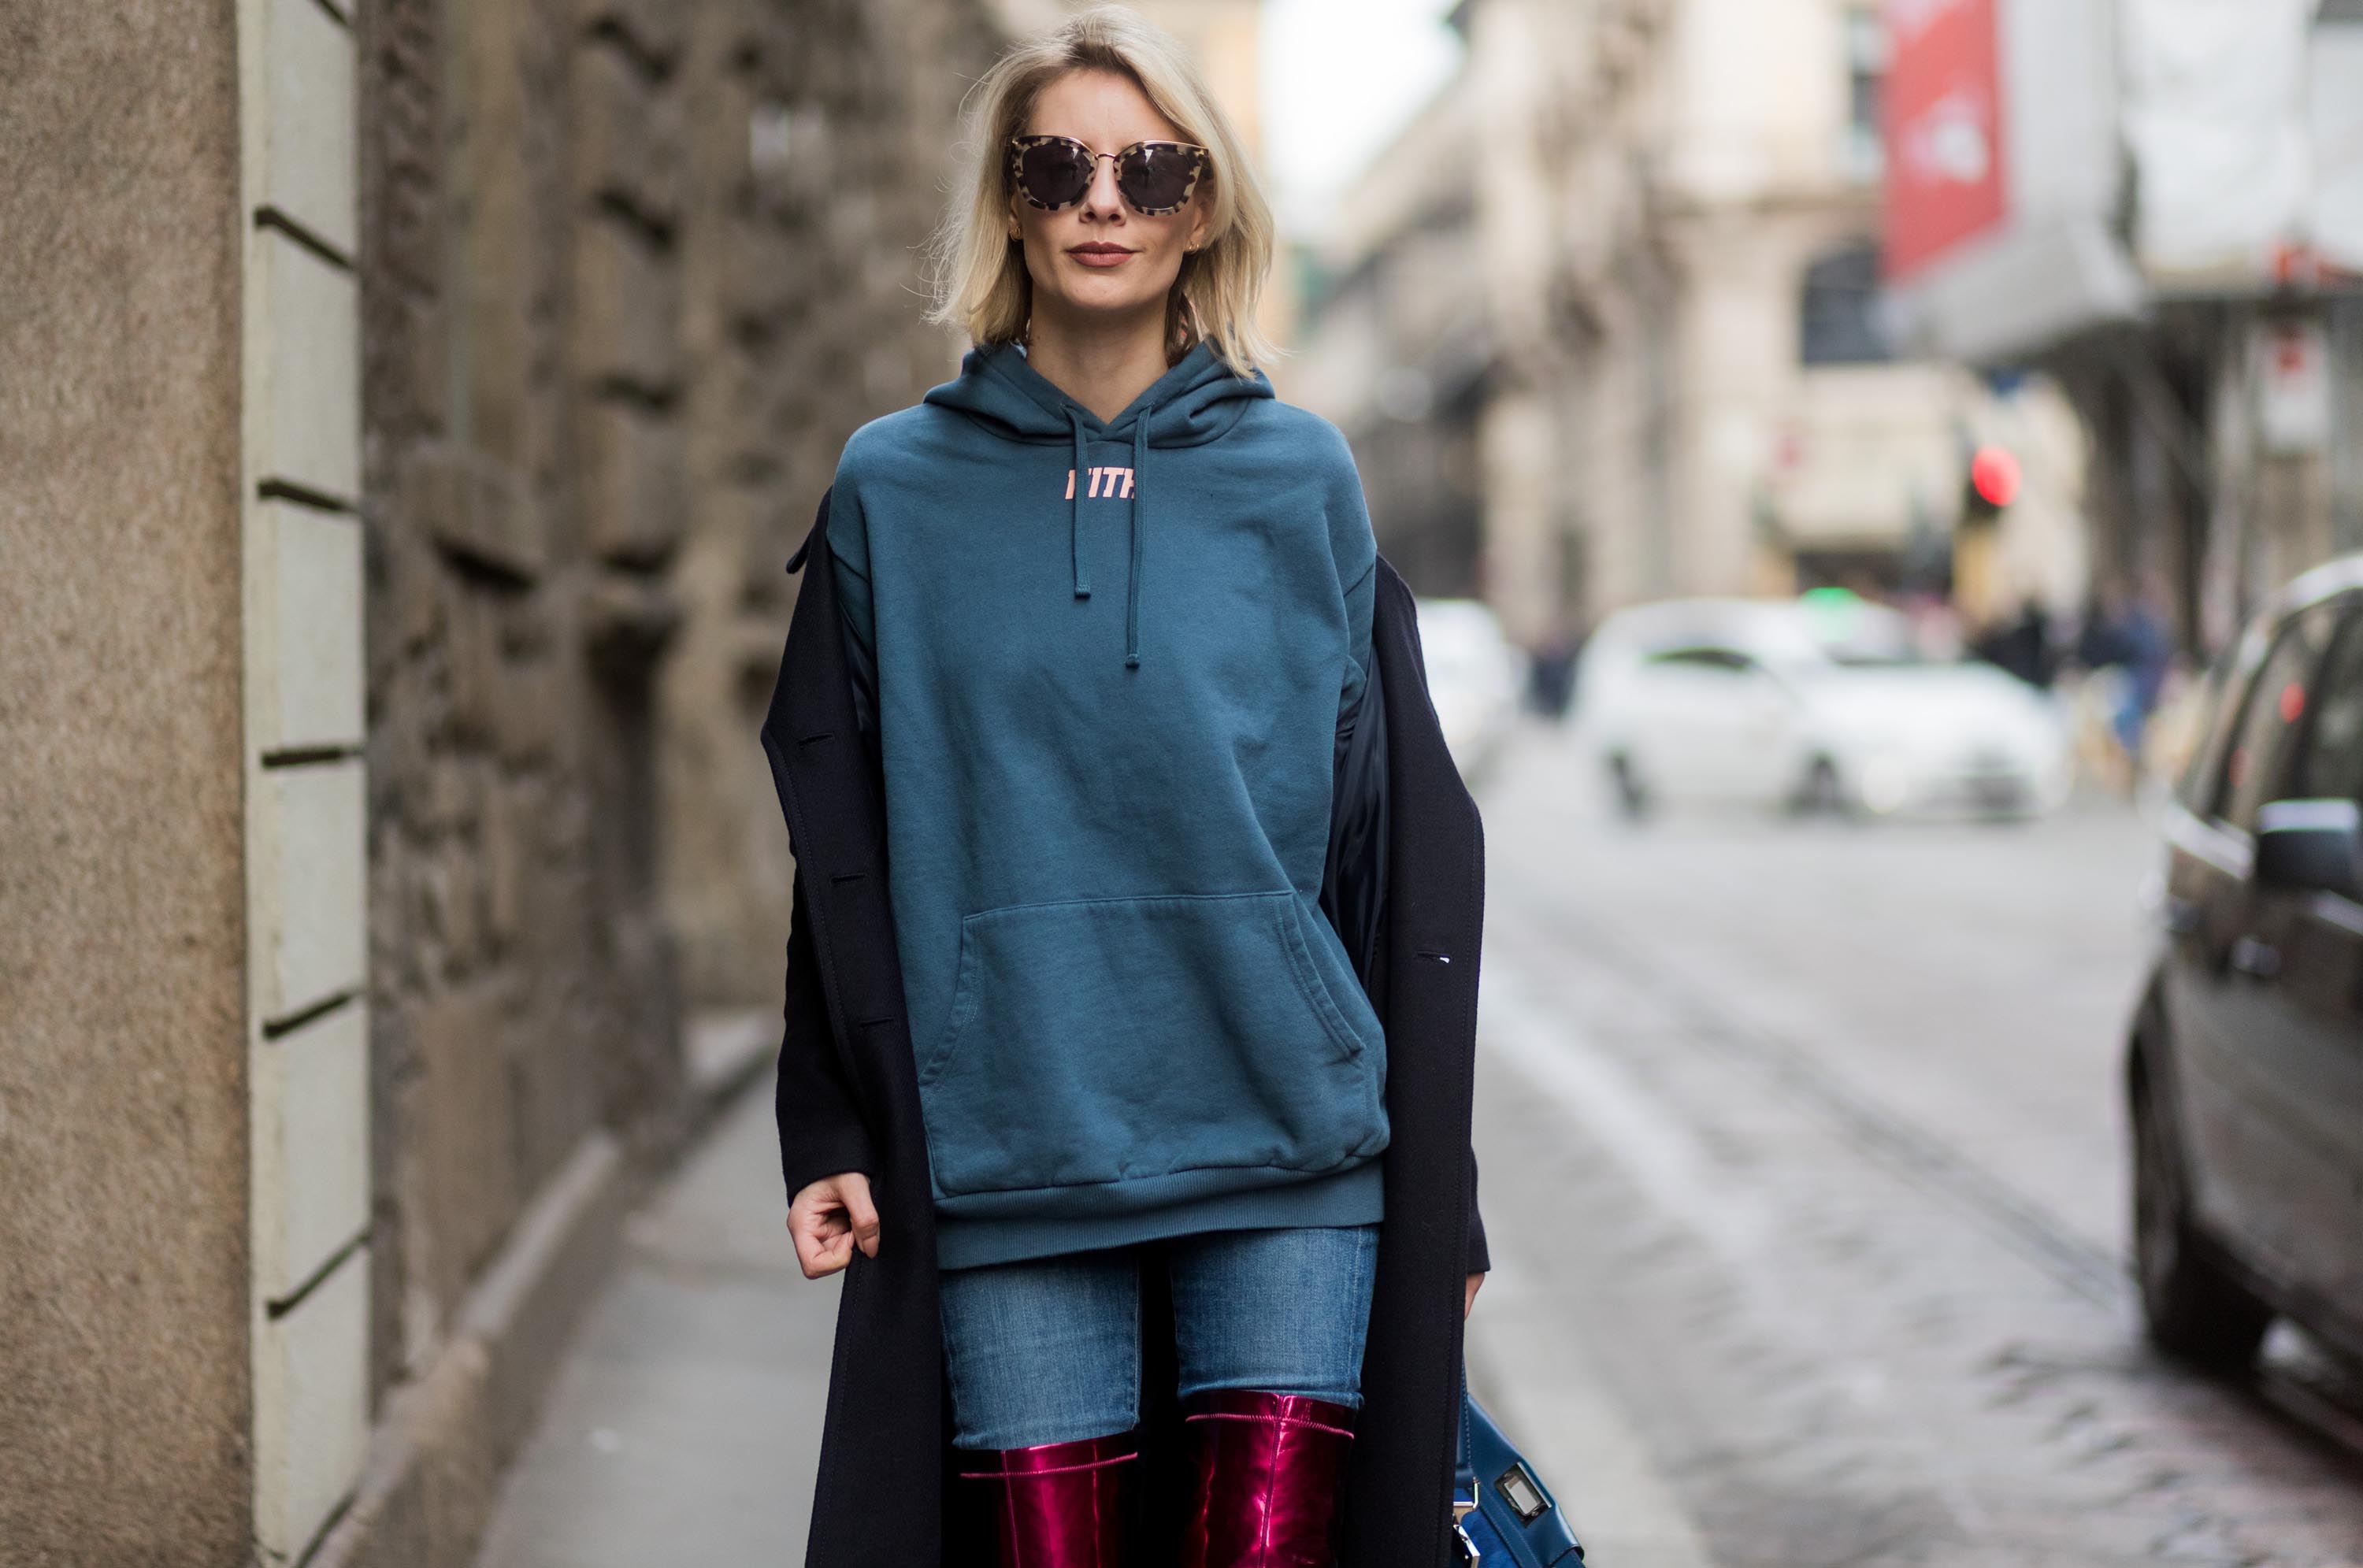 Street style during Milan Fashion Week Fall/Winter 2017/18